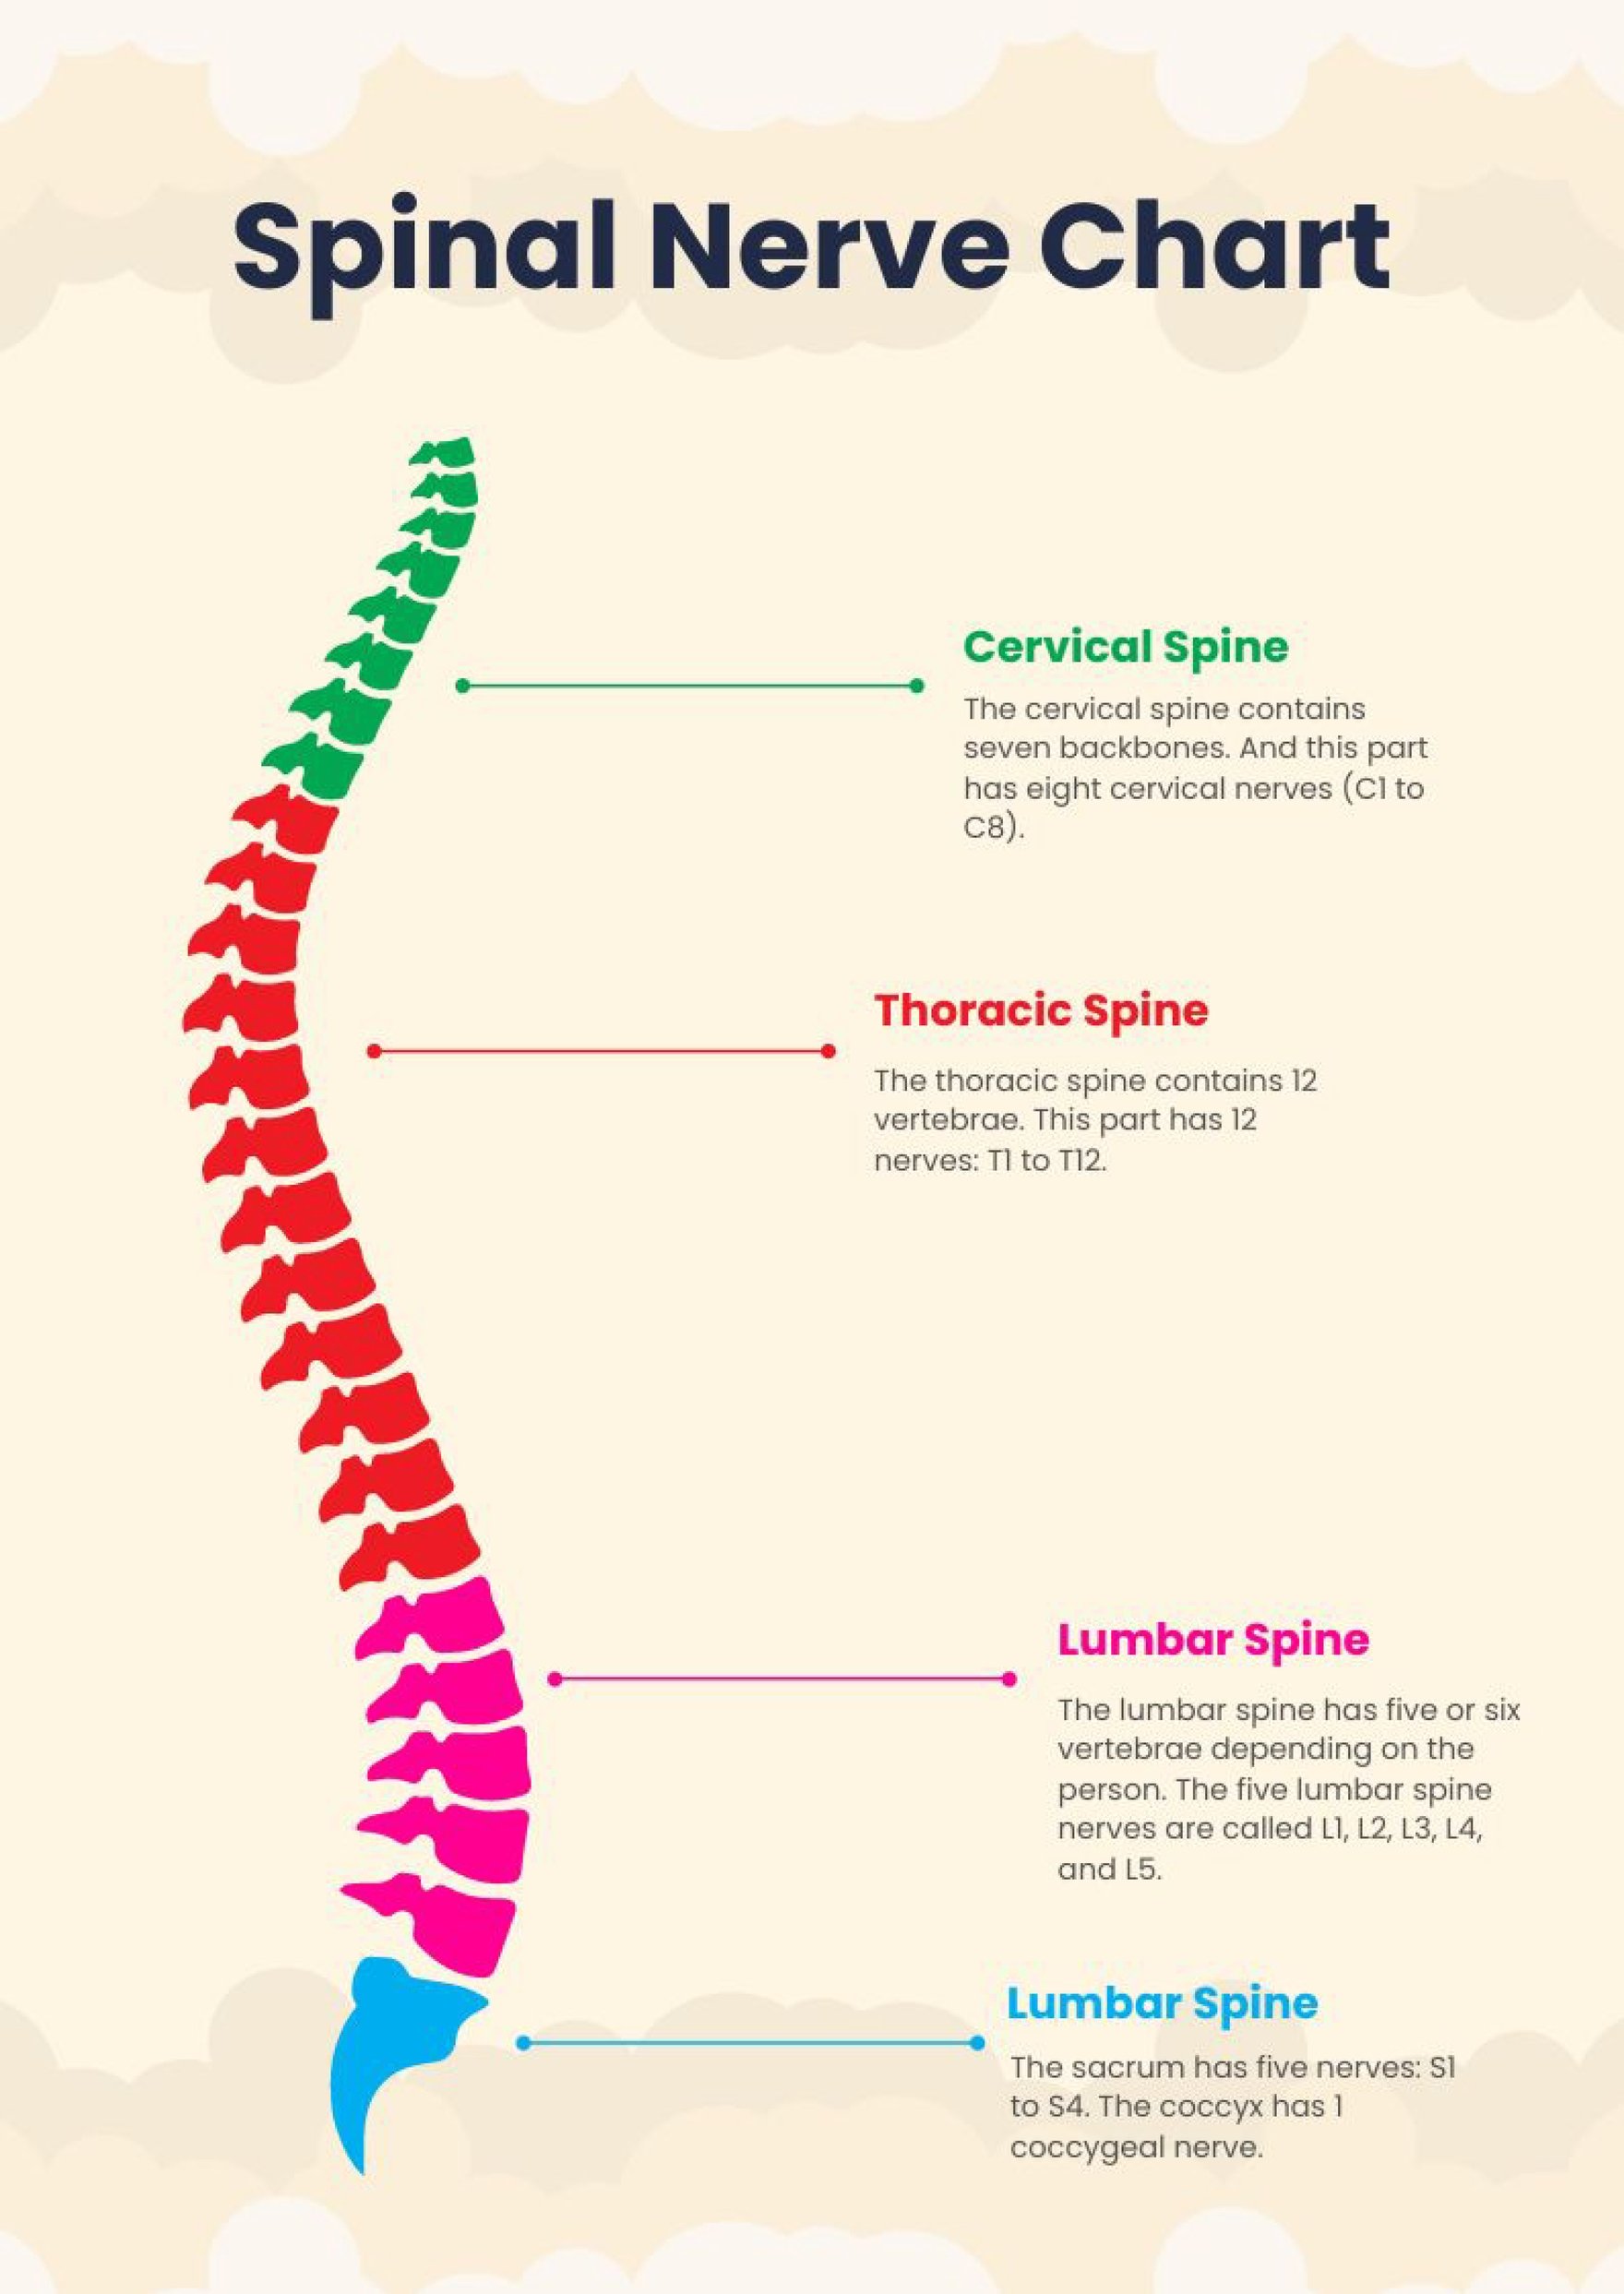 Spinal Nerve Chart in PDF, Illustrator